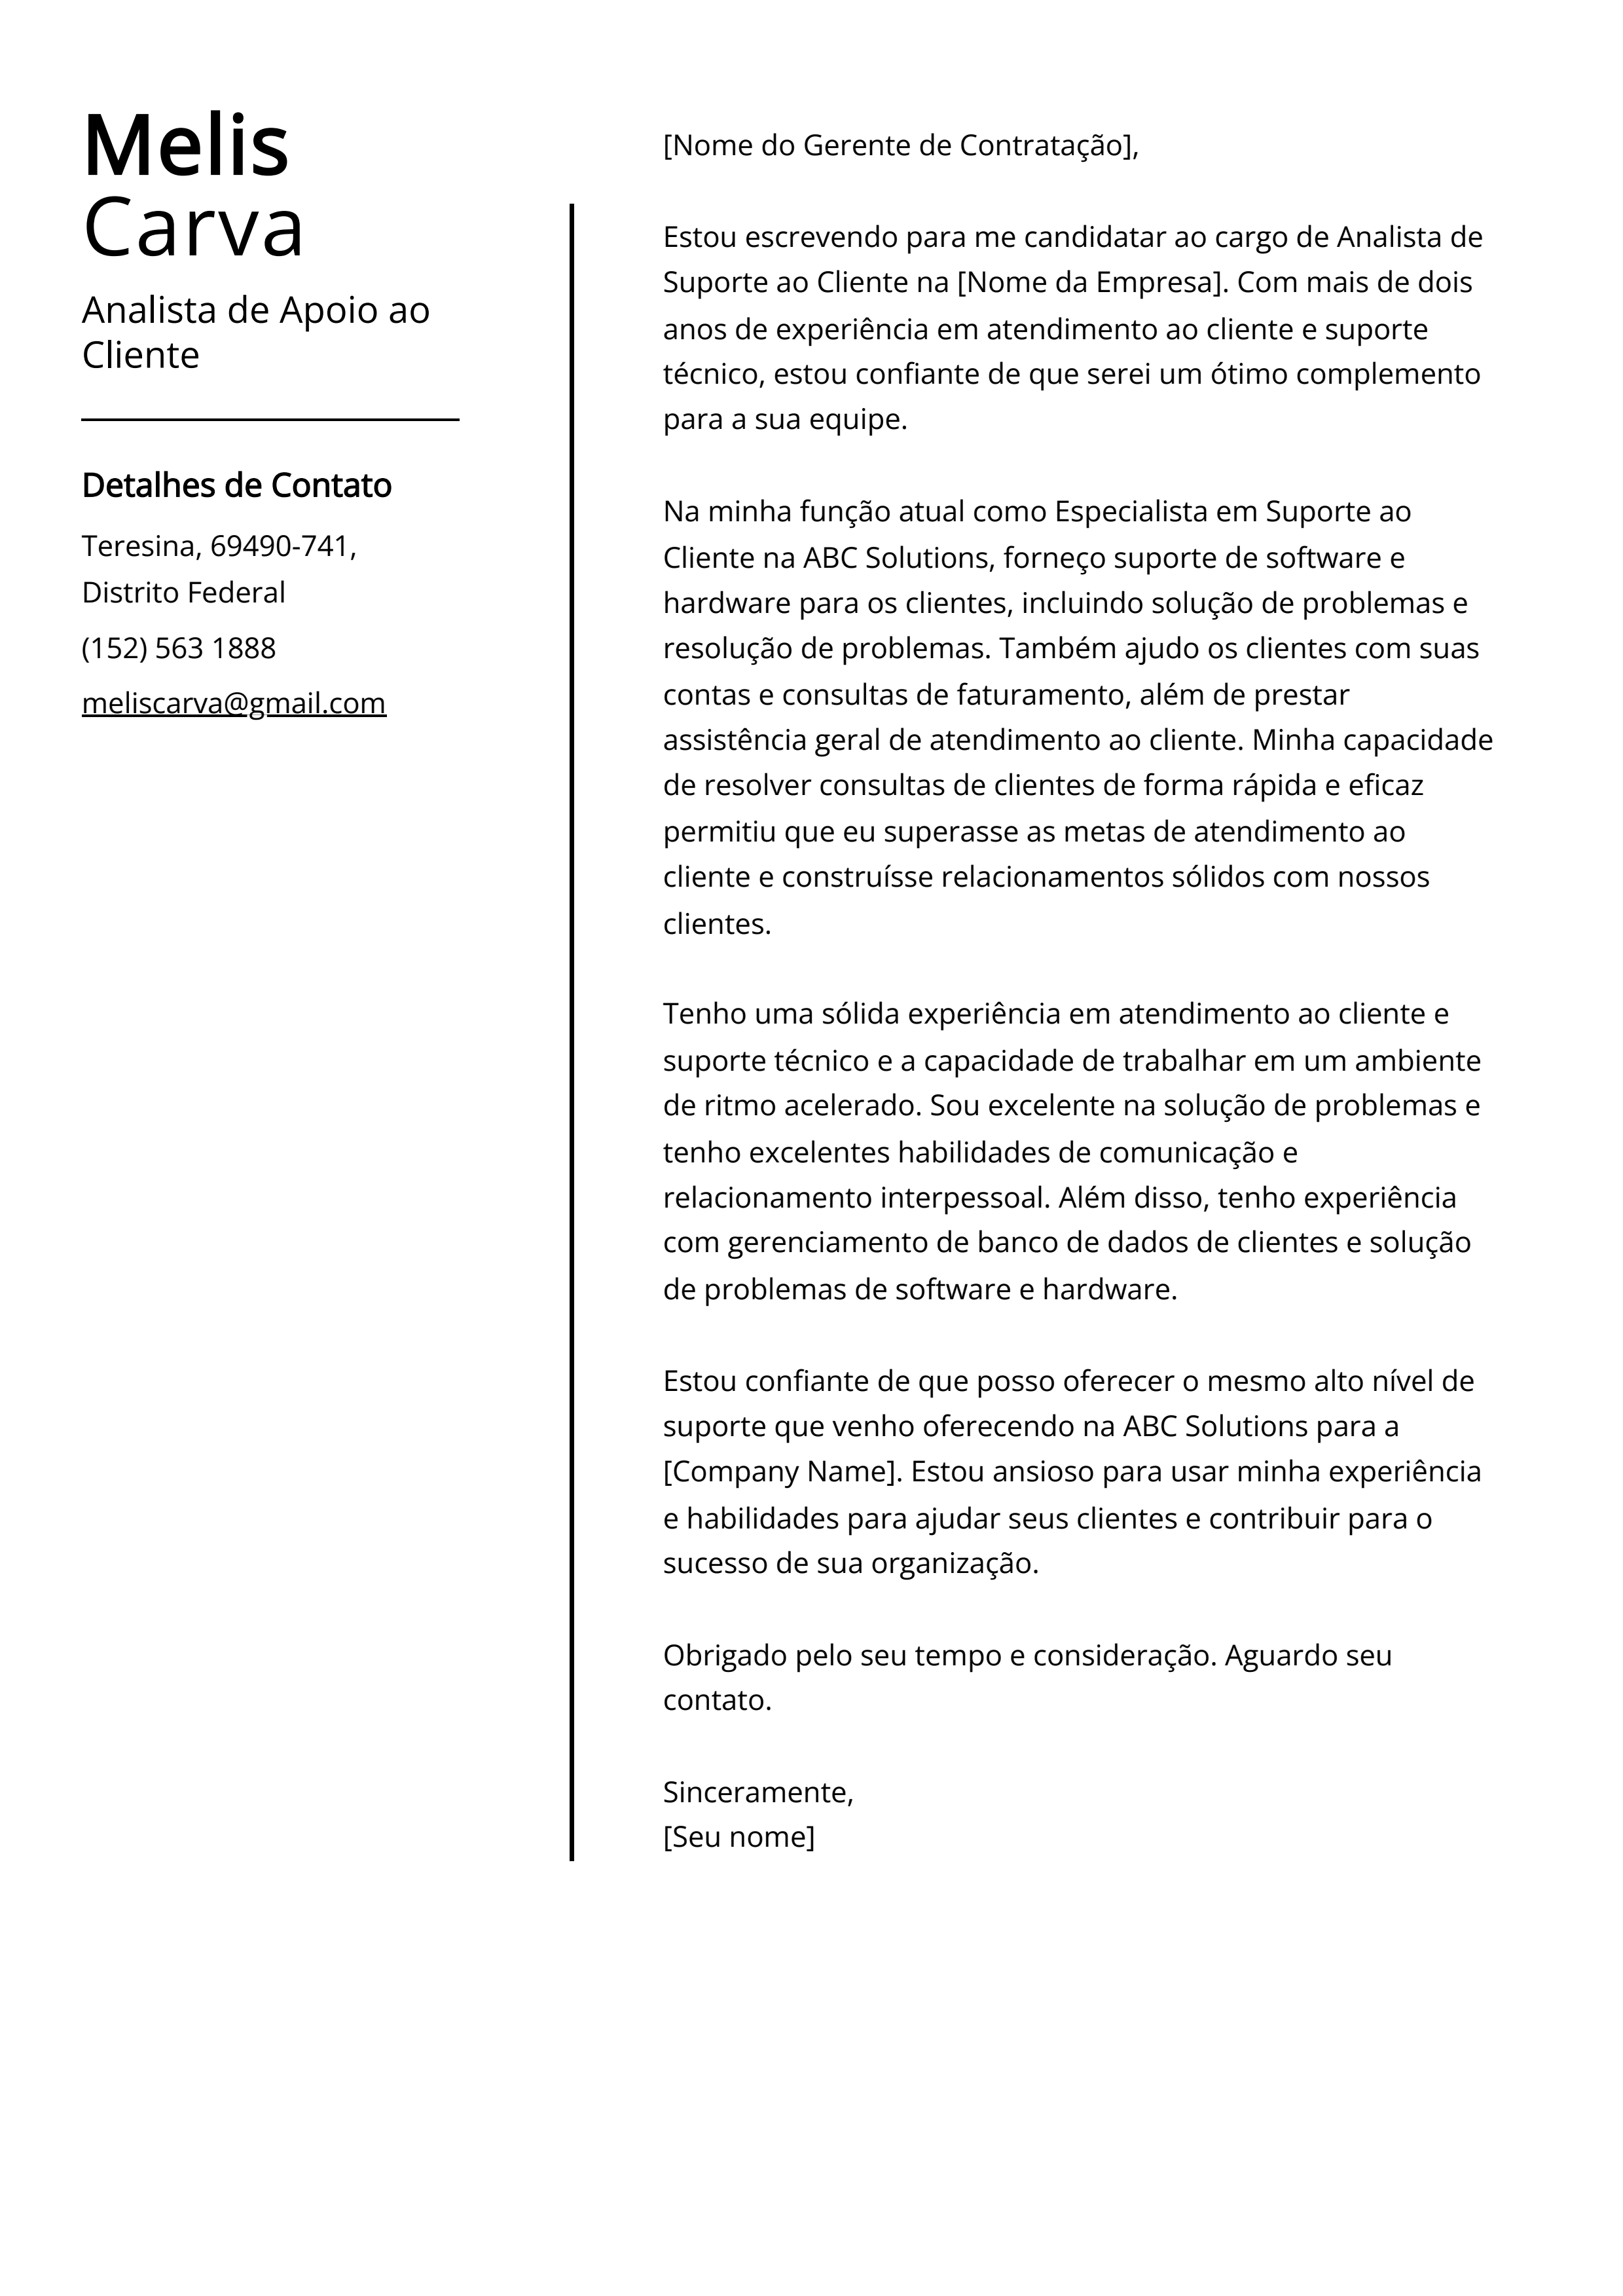 Exemplo de carta de apresentação do Analista de Apoio ao Cliente